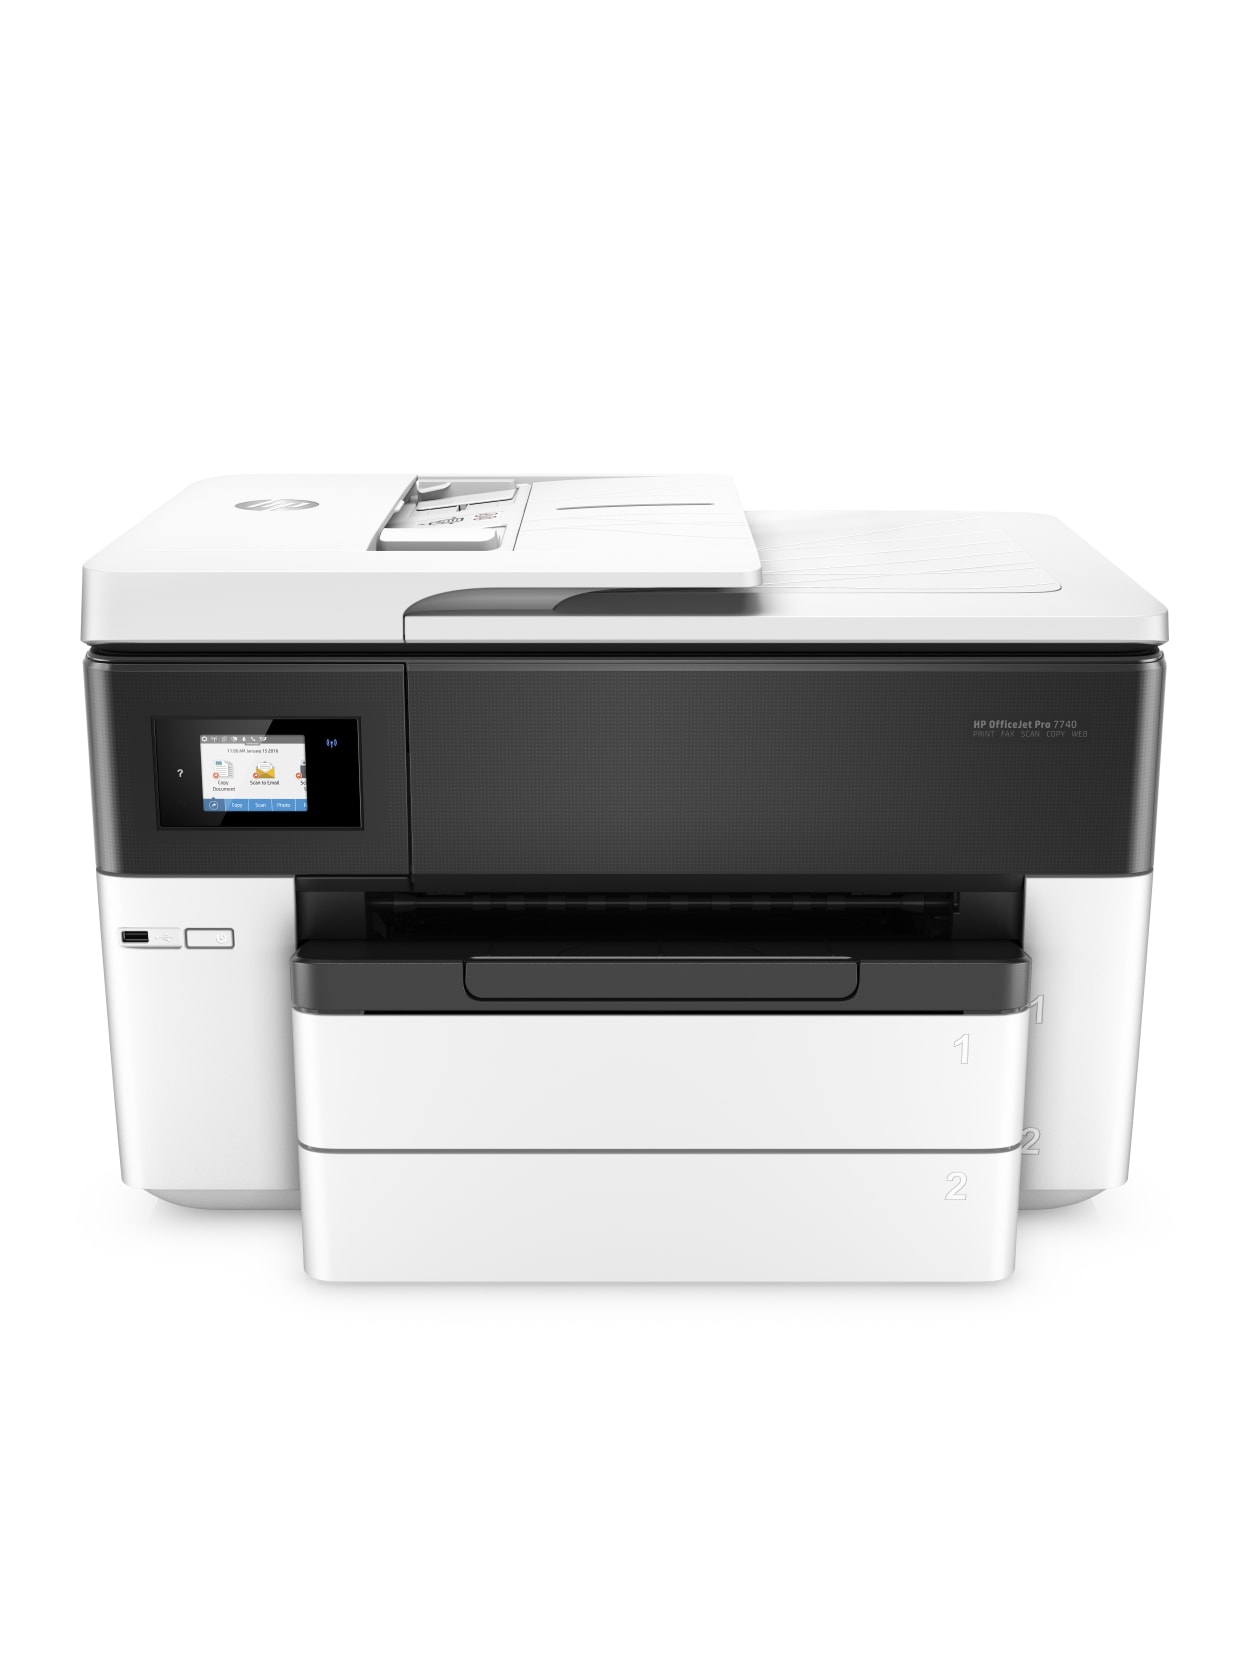 Hp Officejet Pro 7740 Wide Format Printer Office Depot